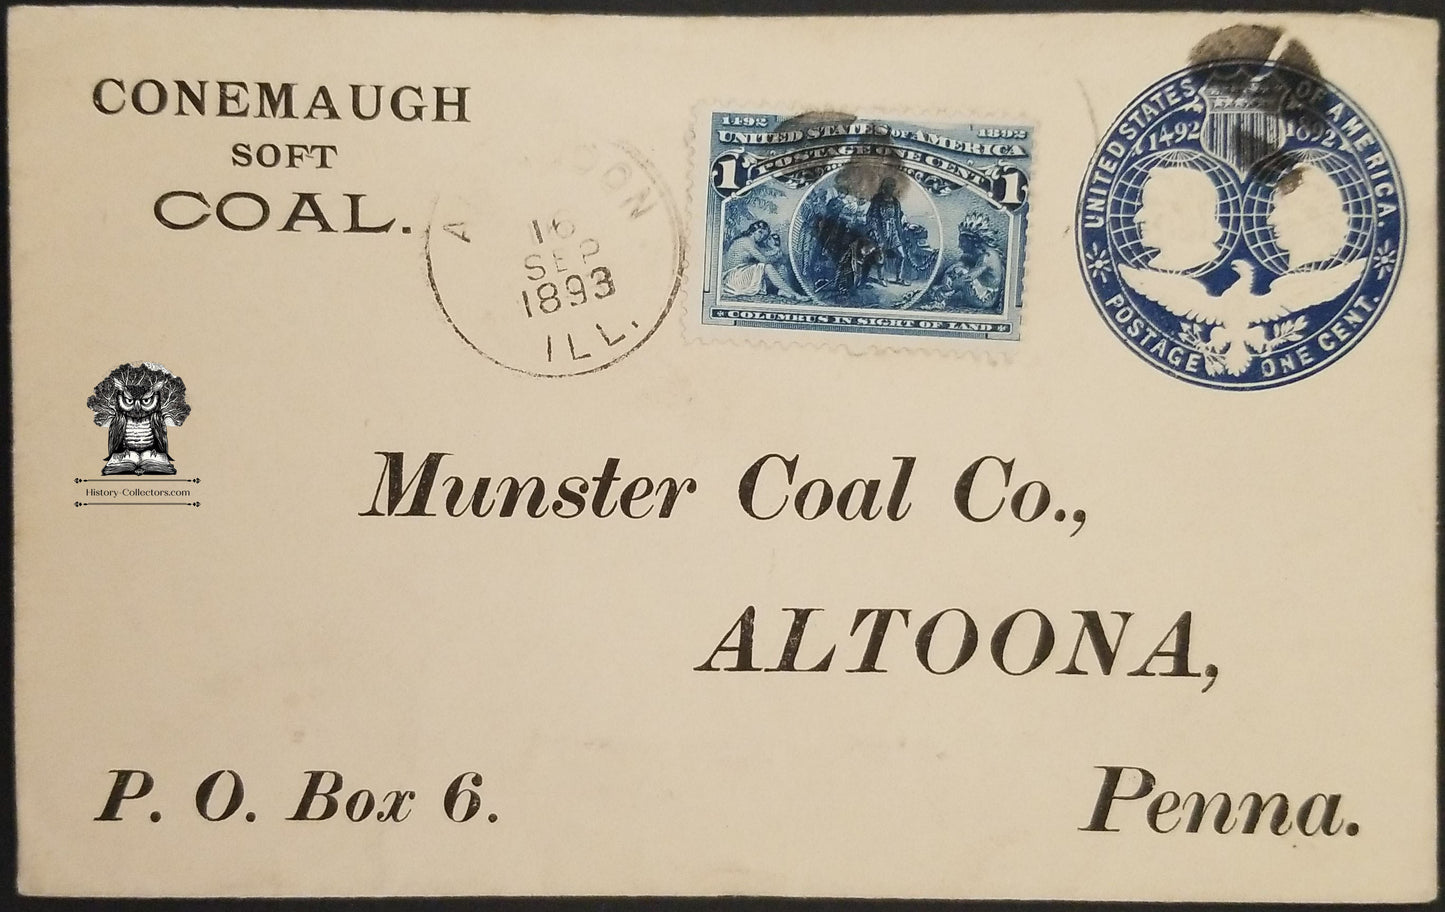 1893 Conemaugh Soft Coal Munster Coal Co - Altoona PA Postal Cover Envelope Cancel